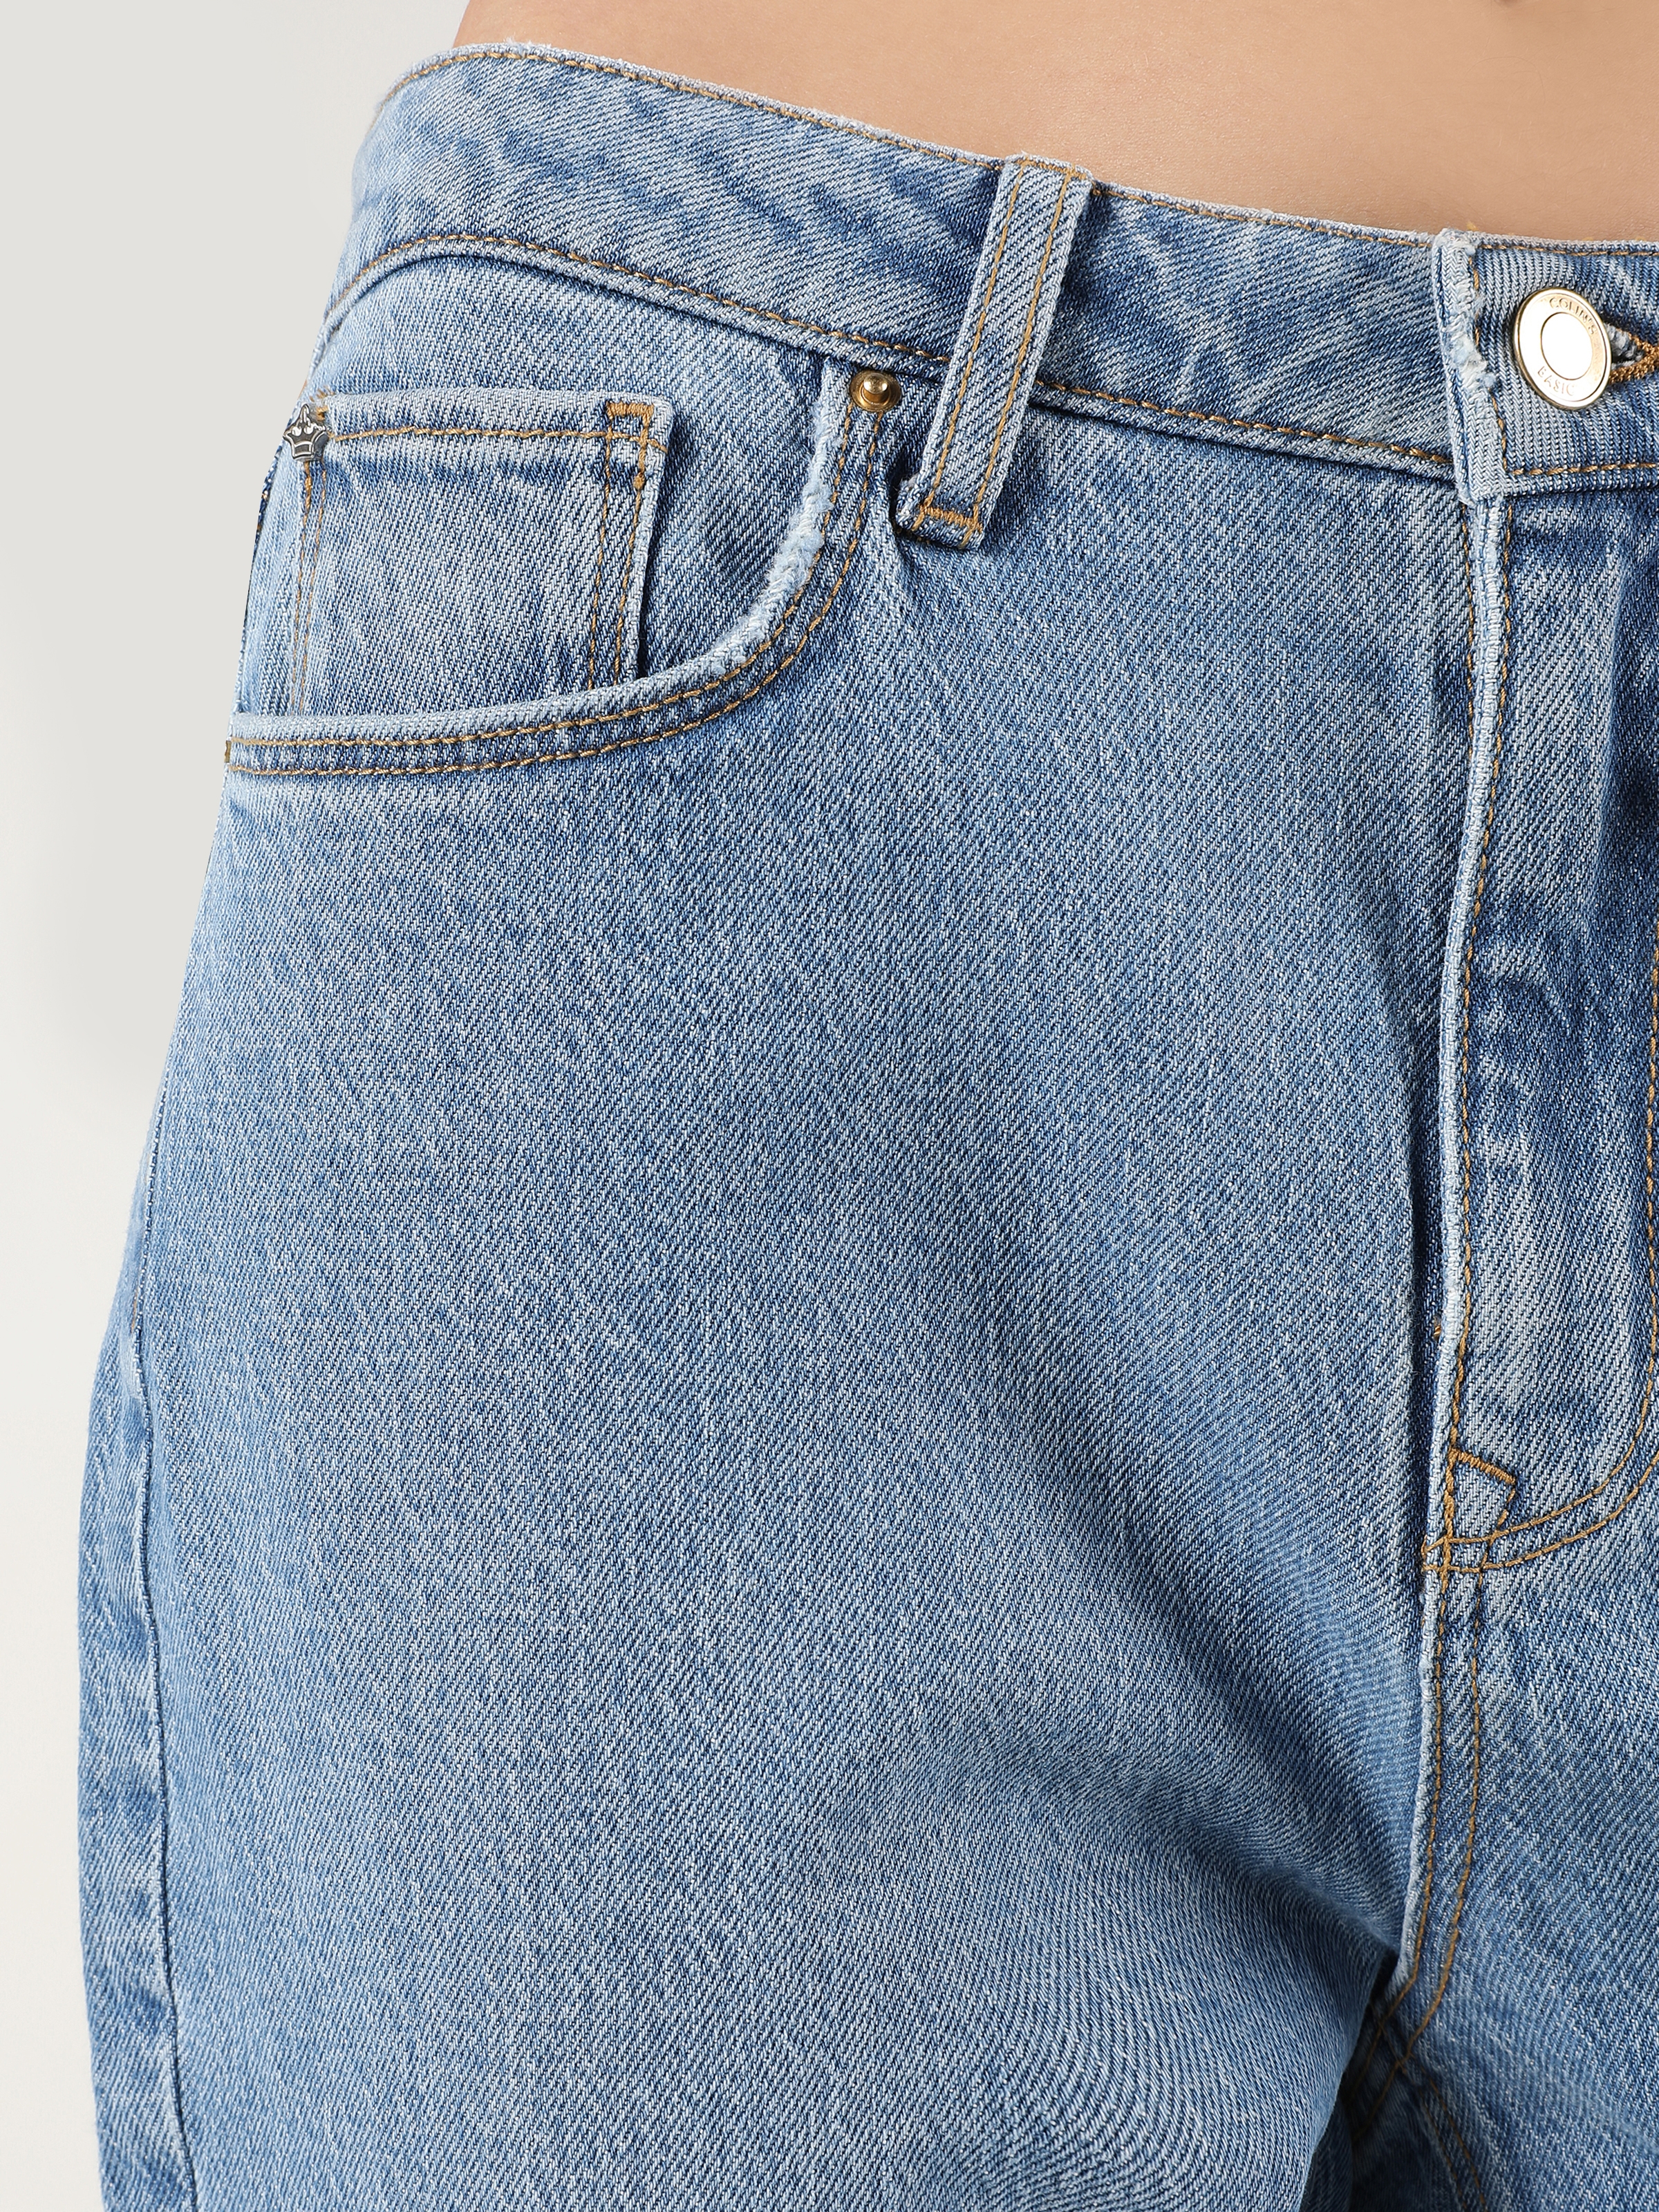 Afficher les détails de 896 Maria Mom Fit Taille Haute Jambe Fuselée Pantalon Jean Bleu Femme